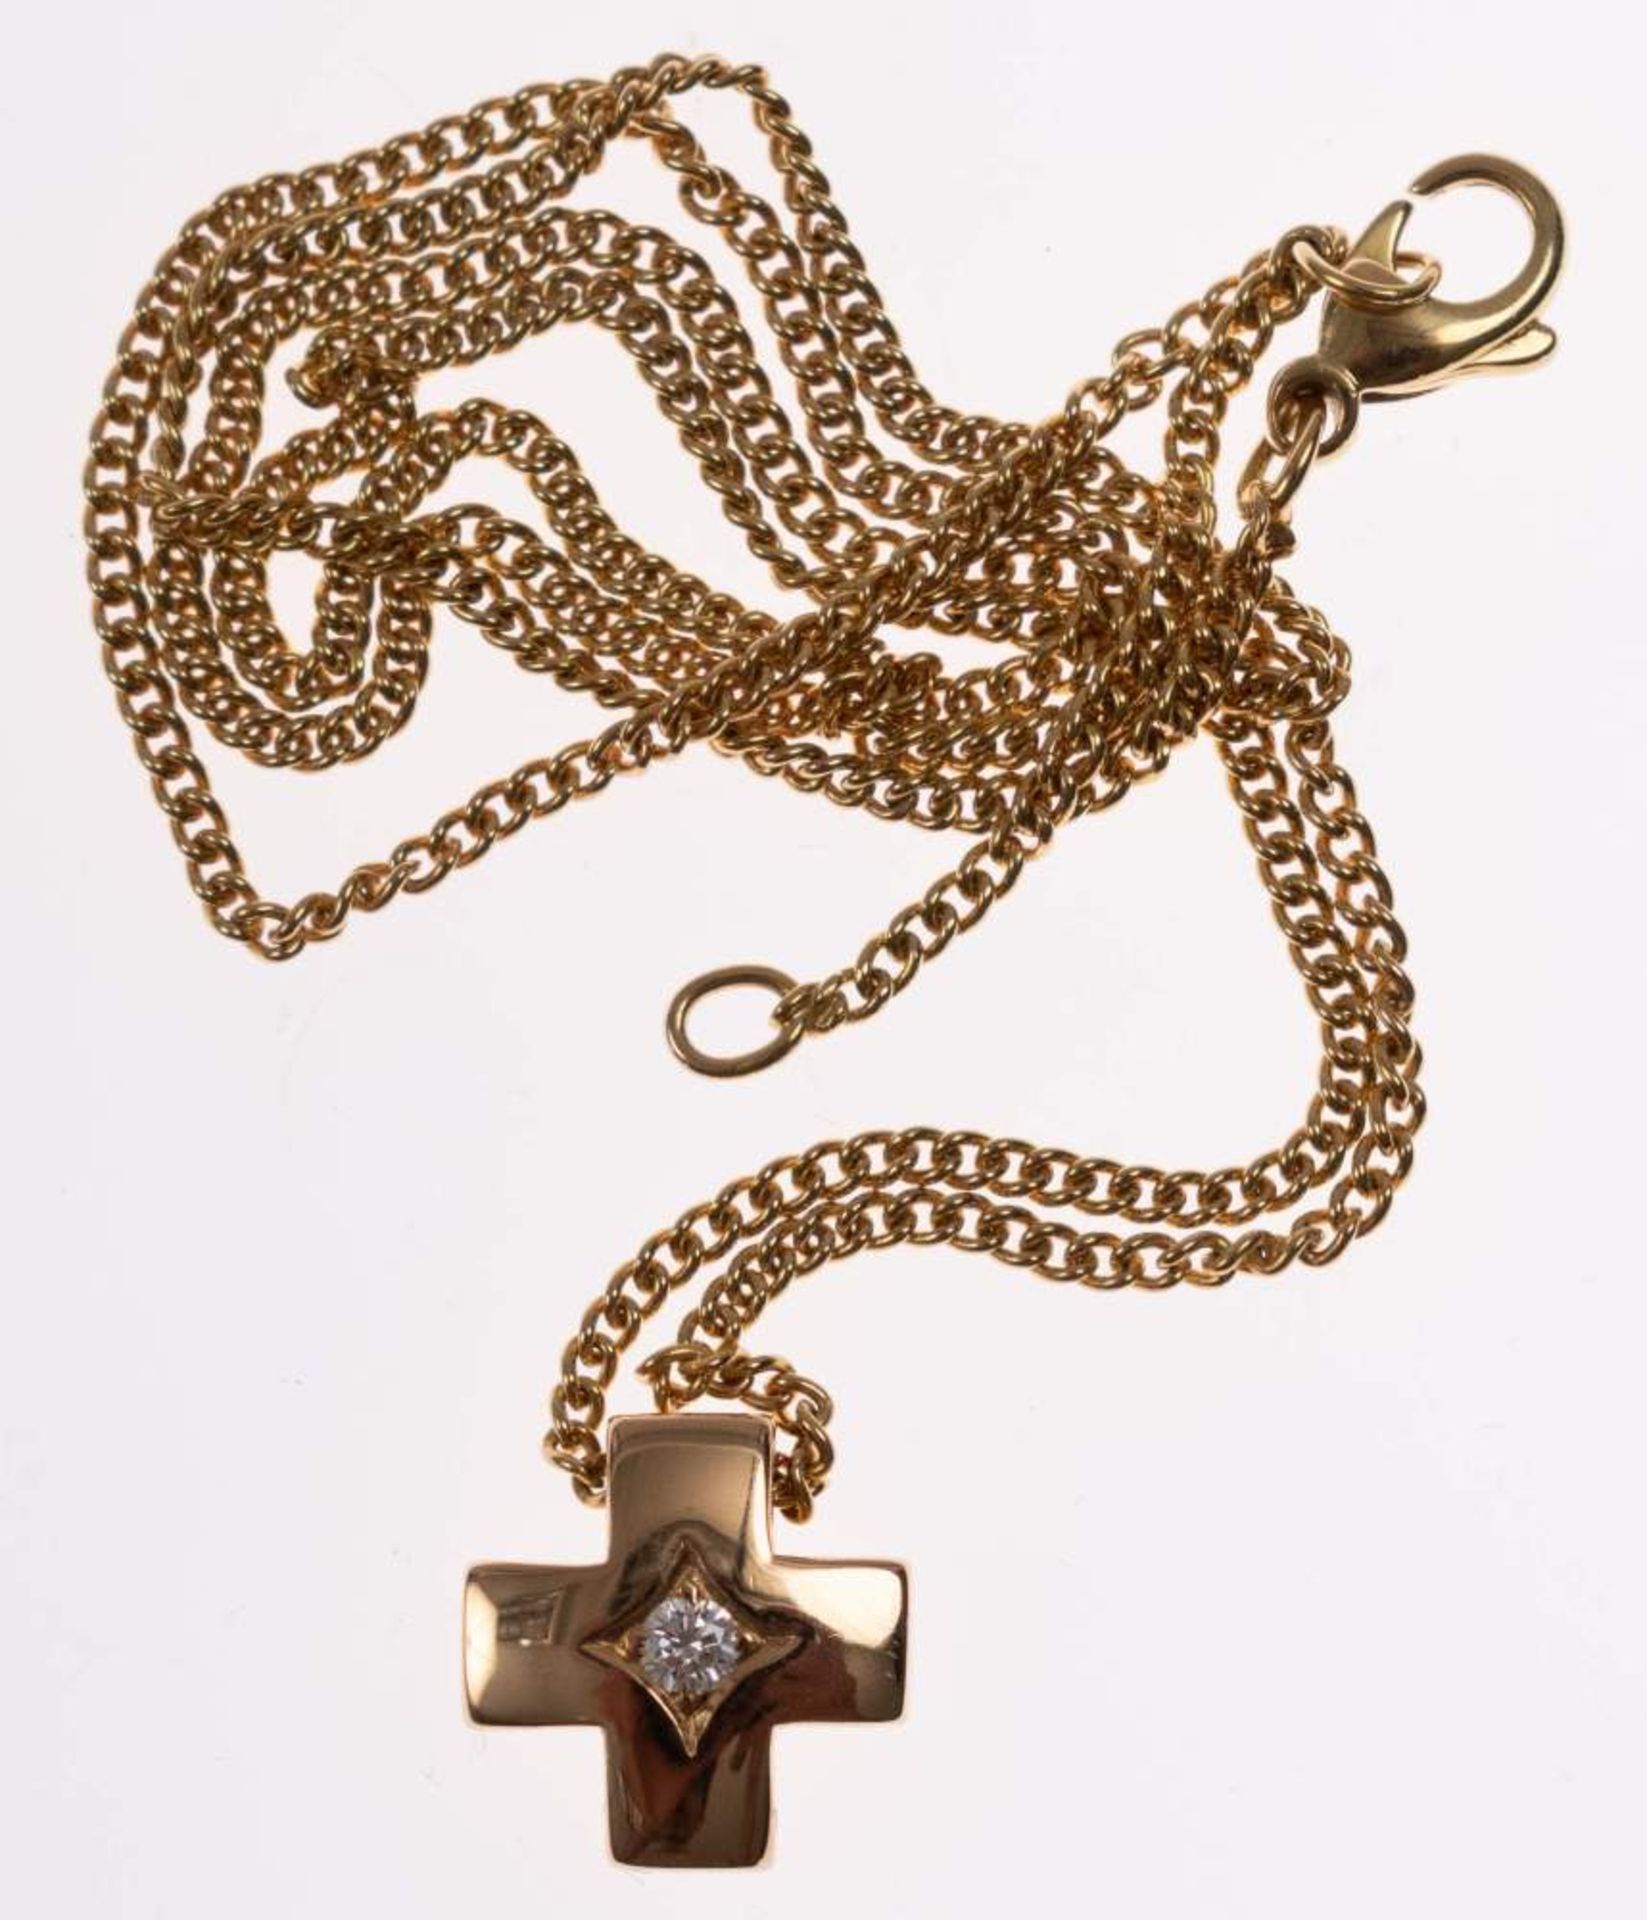 Brillant Anhänger Kreuz an Kette, 750 Gold, Brillant von ca. 0,05ct., Anhänger ca. 1,2x1,2 cm